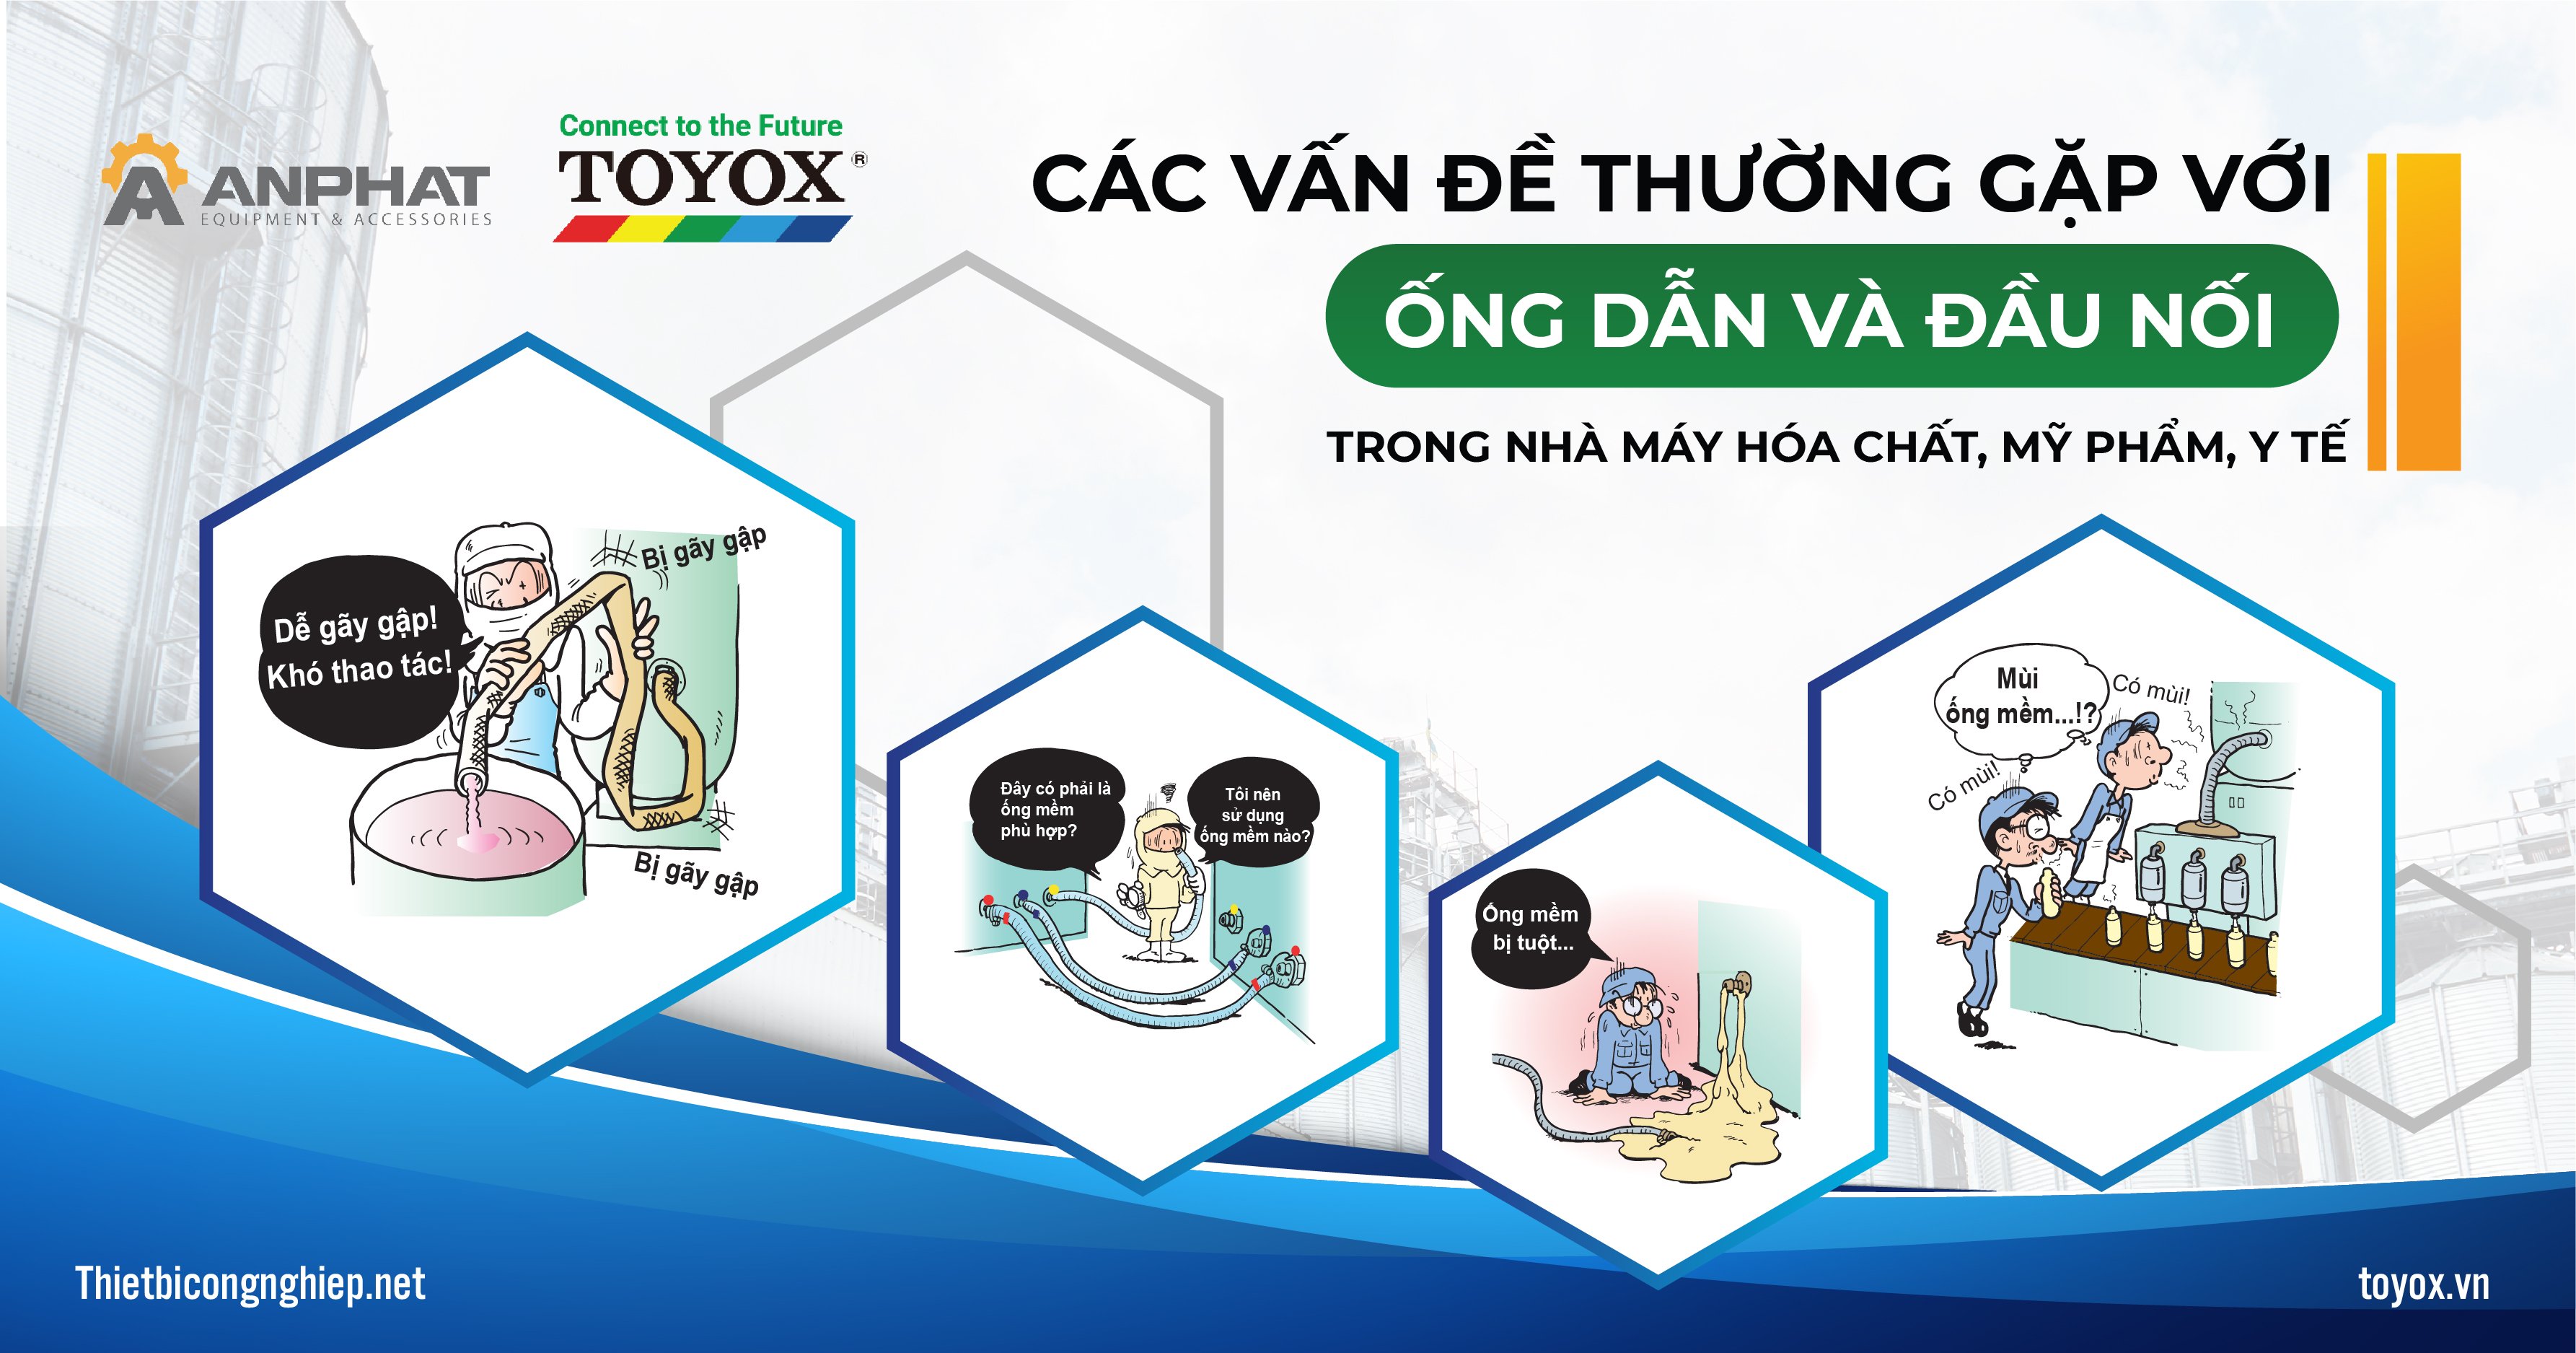 Giải pháp ống dẫn và đầu nối Toyox cải thiện các vấn đề trong nhà máy Hóa chất, Mỹ phẩm, Y tế